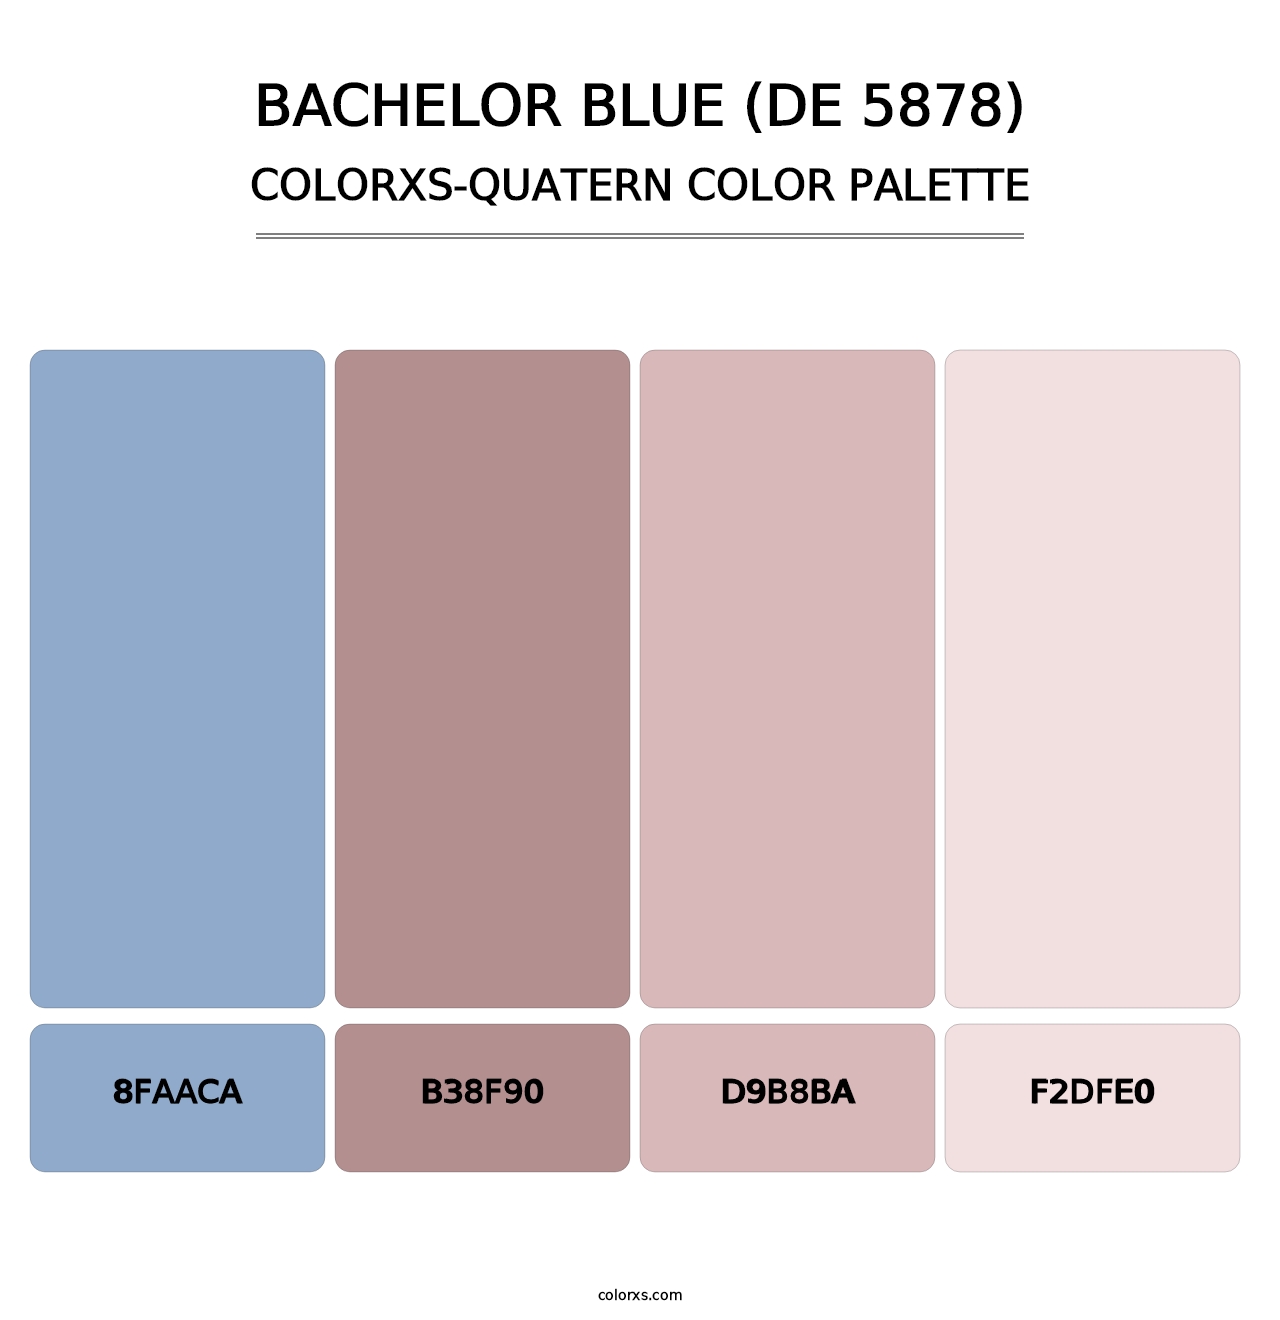 Bachelor Blue (DE 5878) - Colorxs Quatern Palette